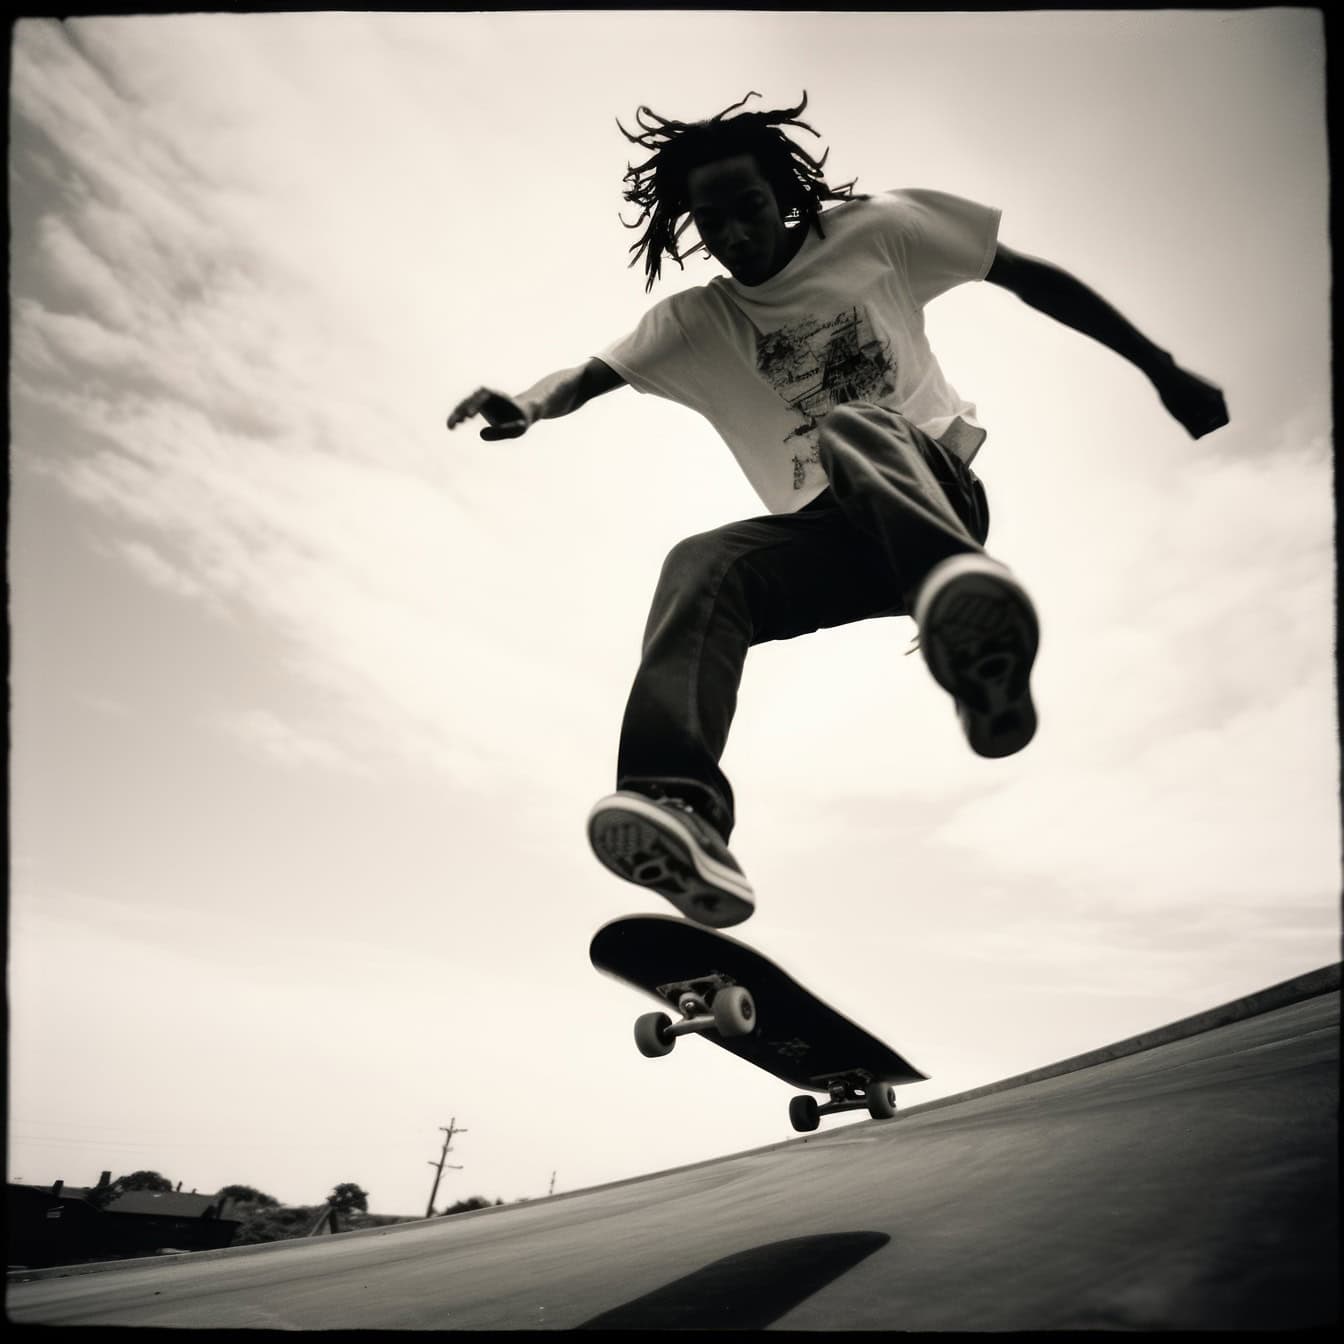 Foto polaroid tua hitam putih dari siluet seorang pria Afro Amerika yang melompat di udara di atas skateboard seperti stuntman